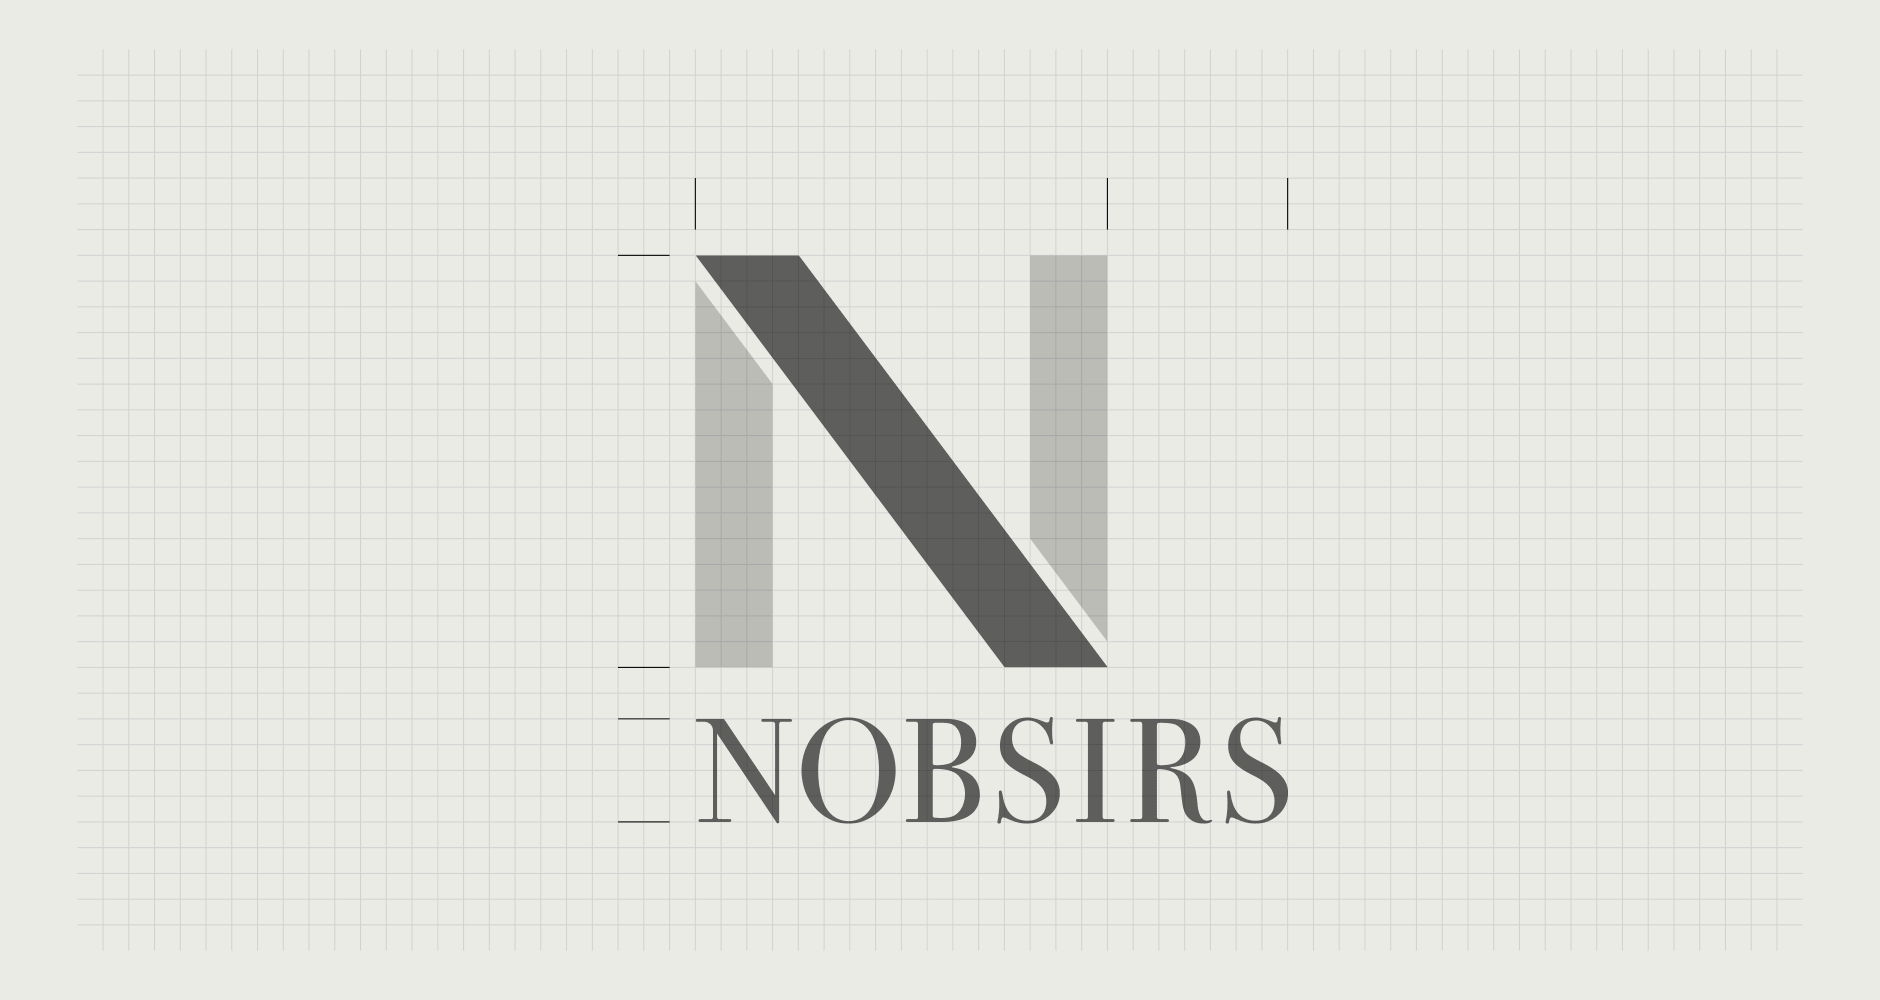 NOBSIRS